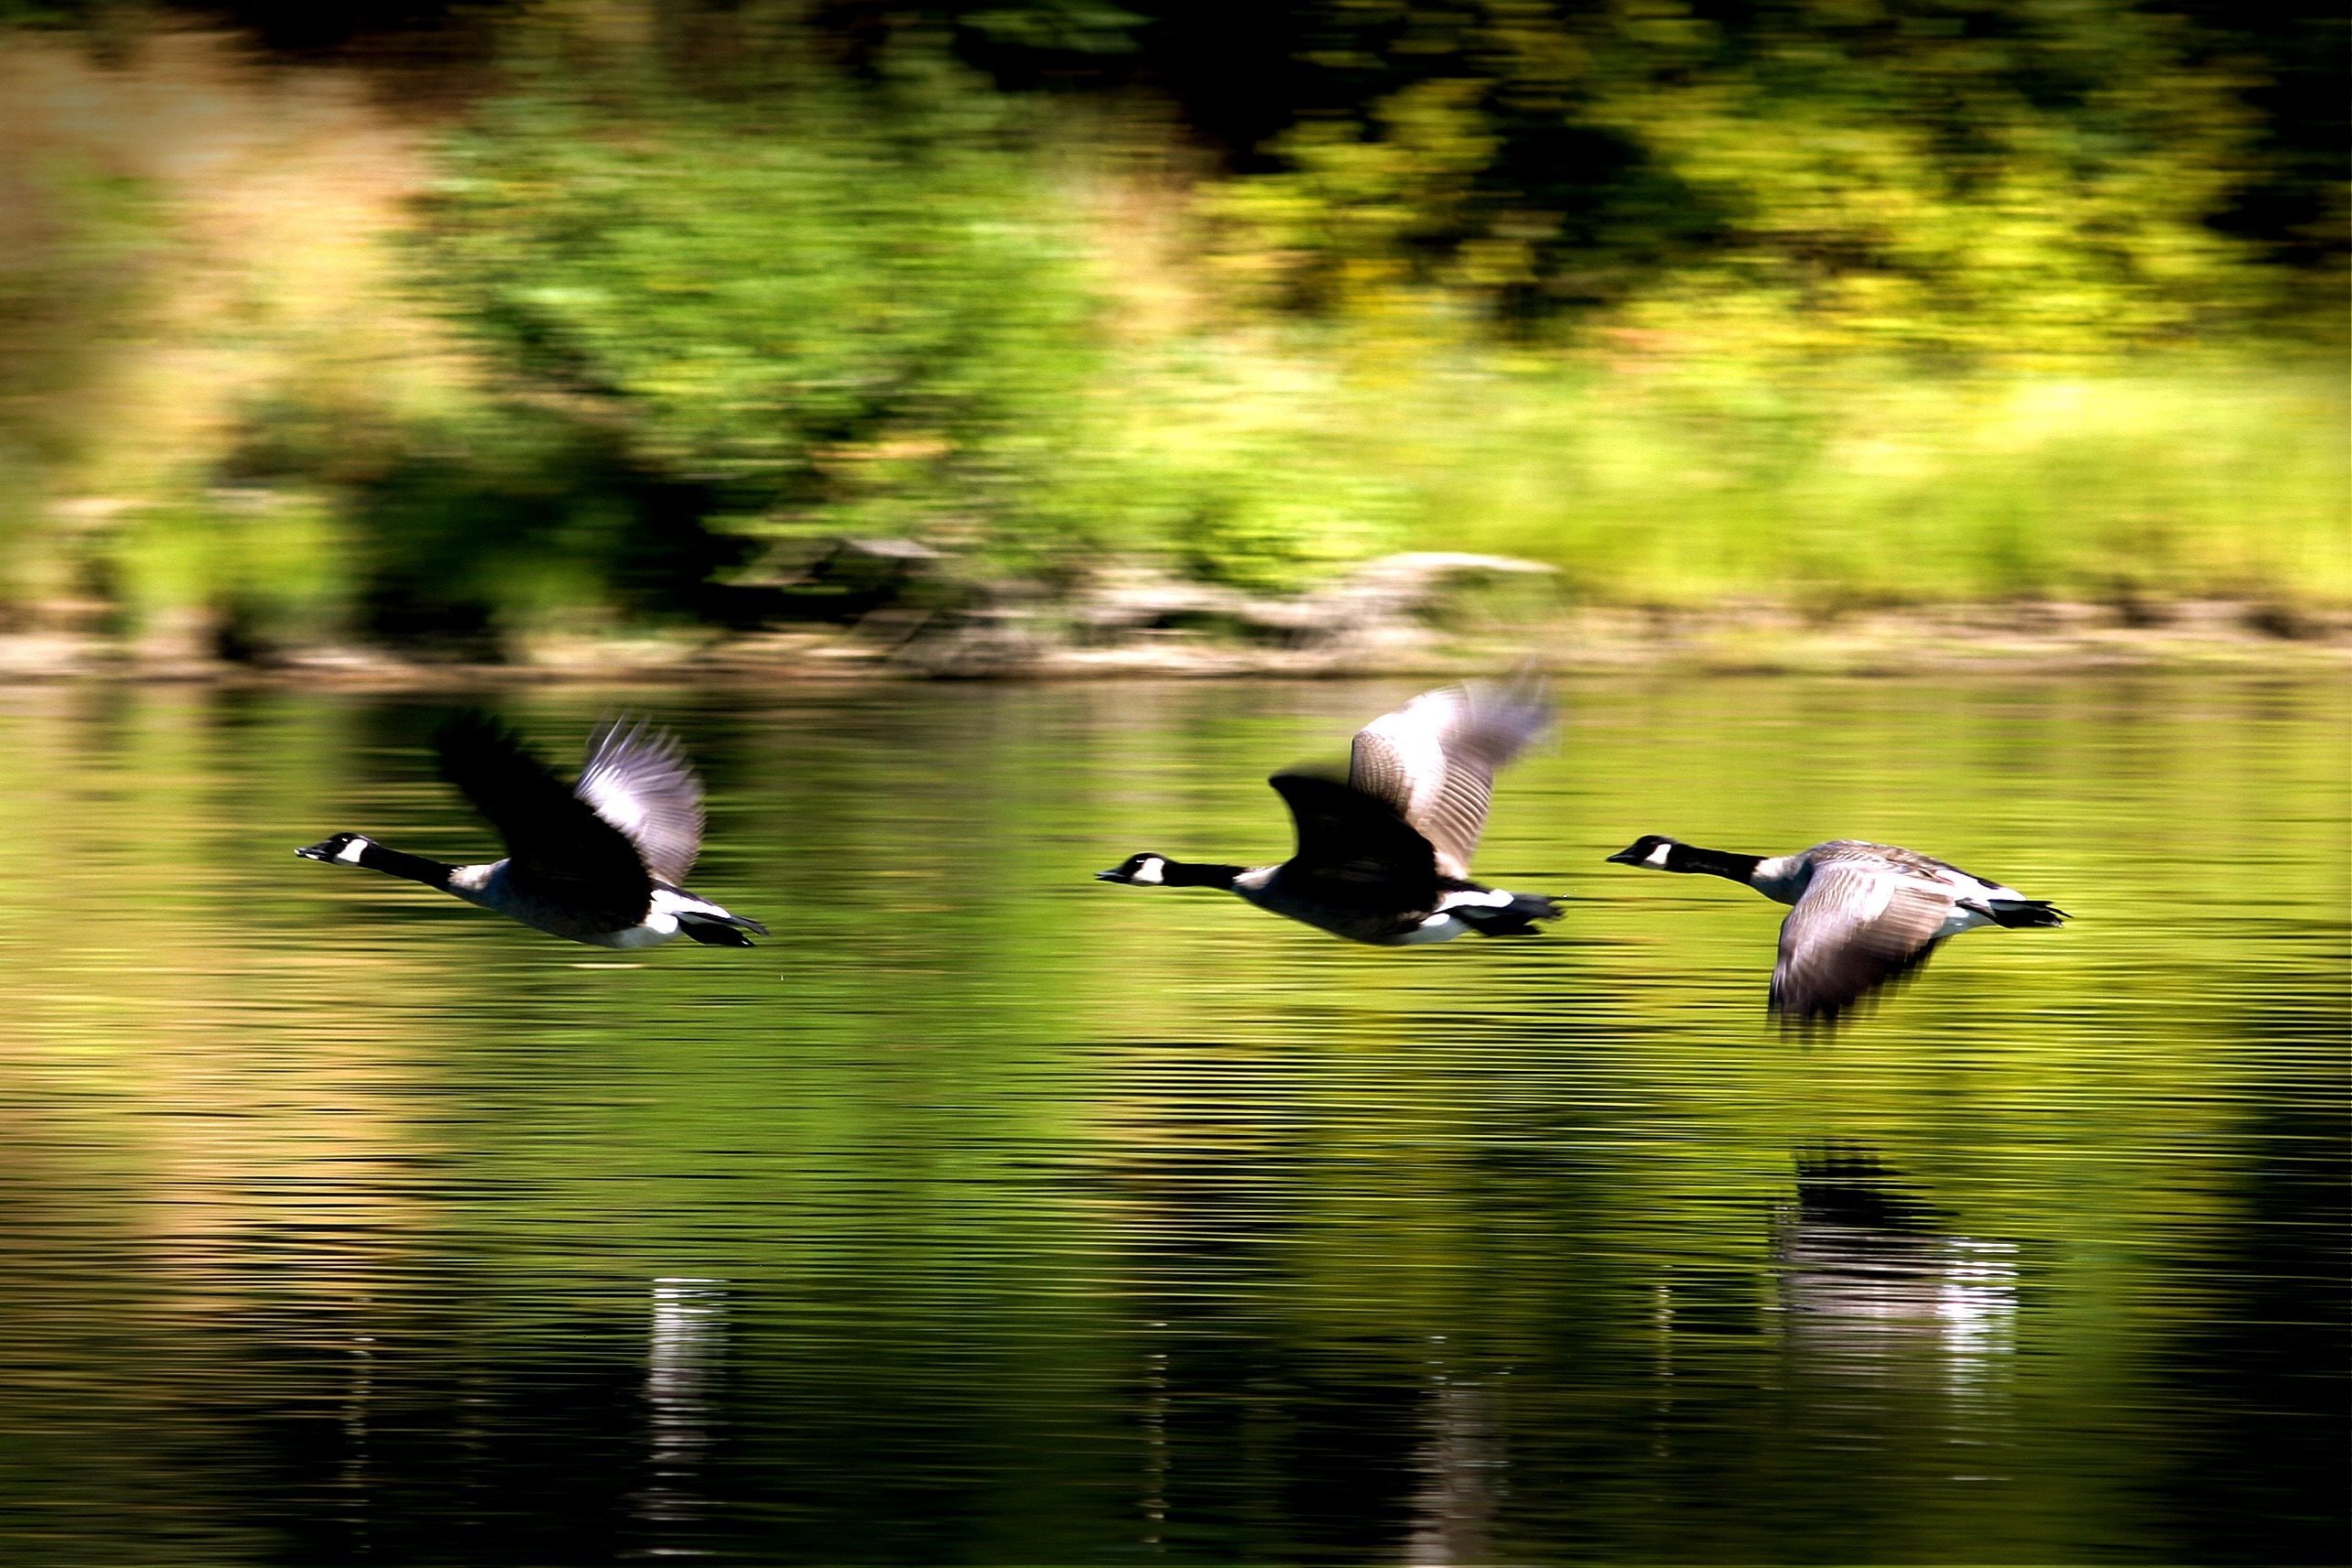 3 black goose